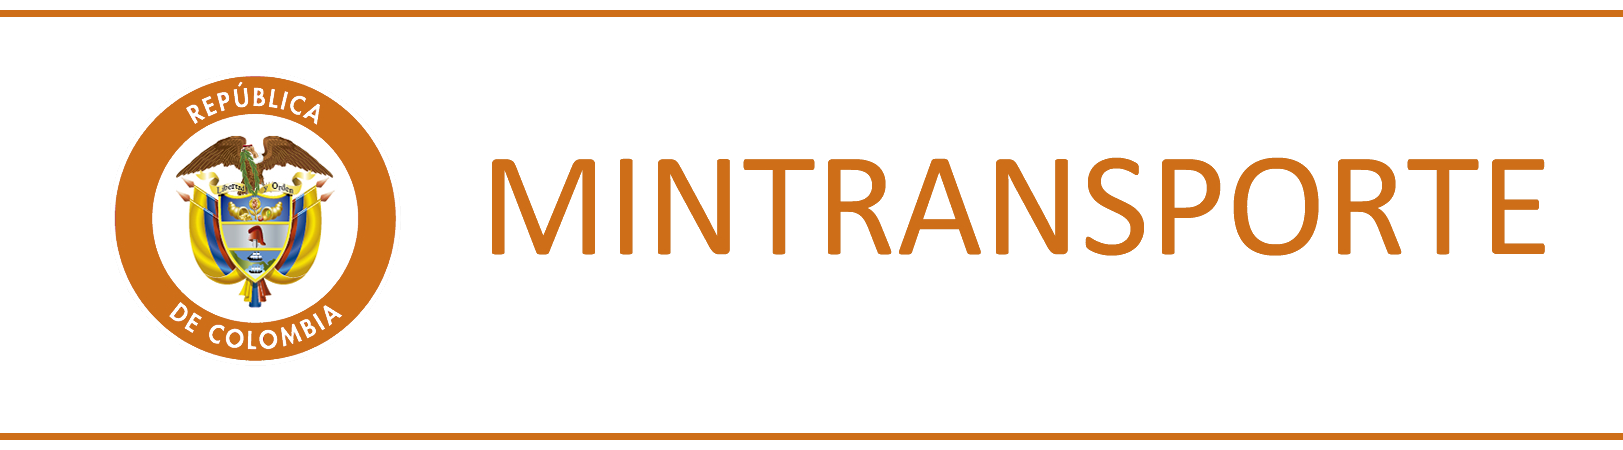 MinTransporte.png